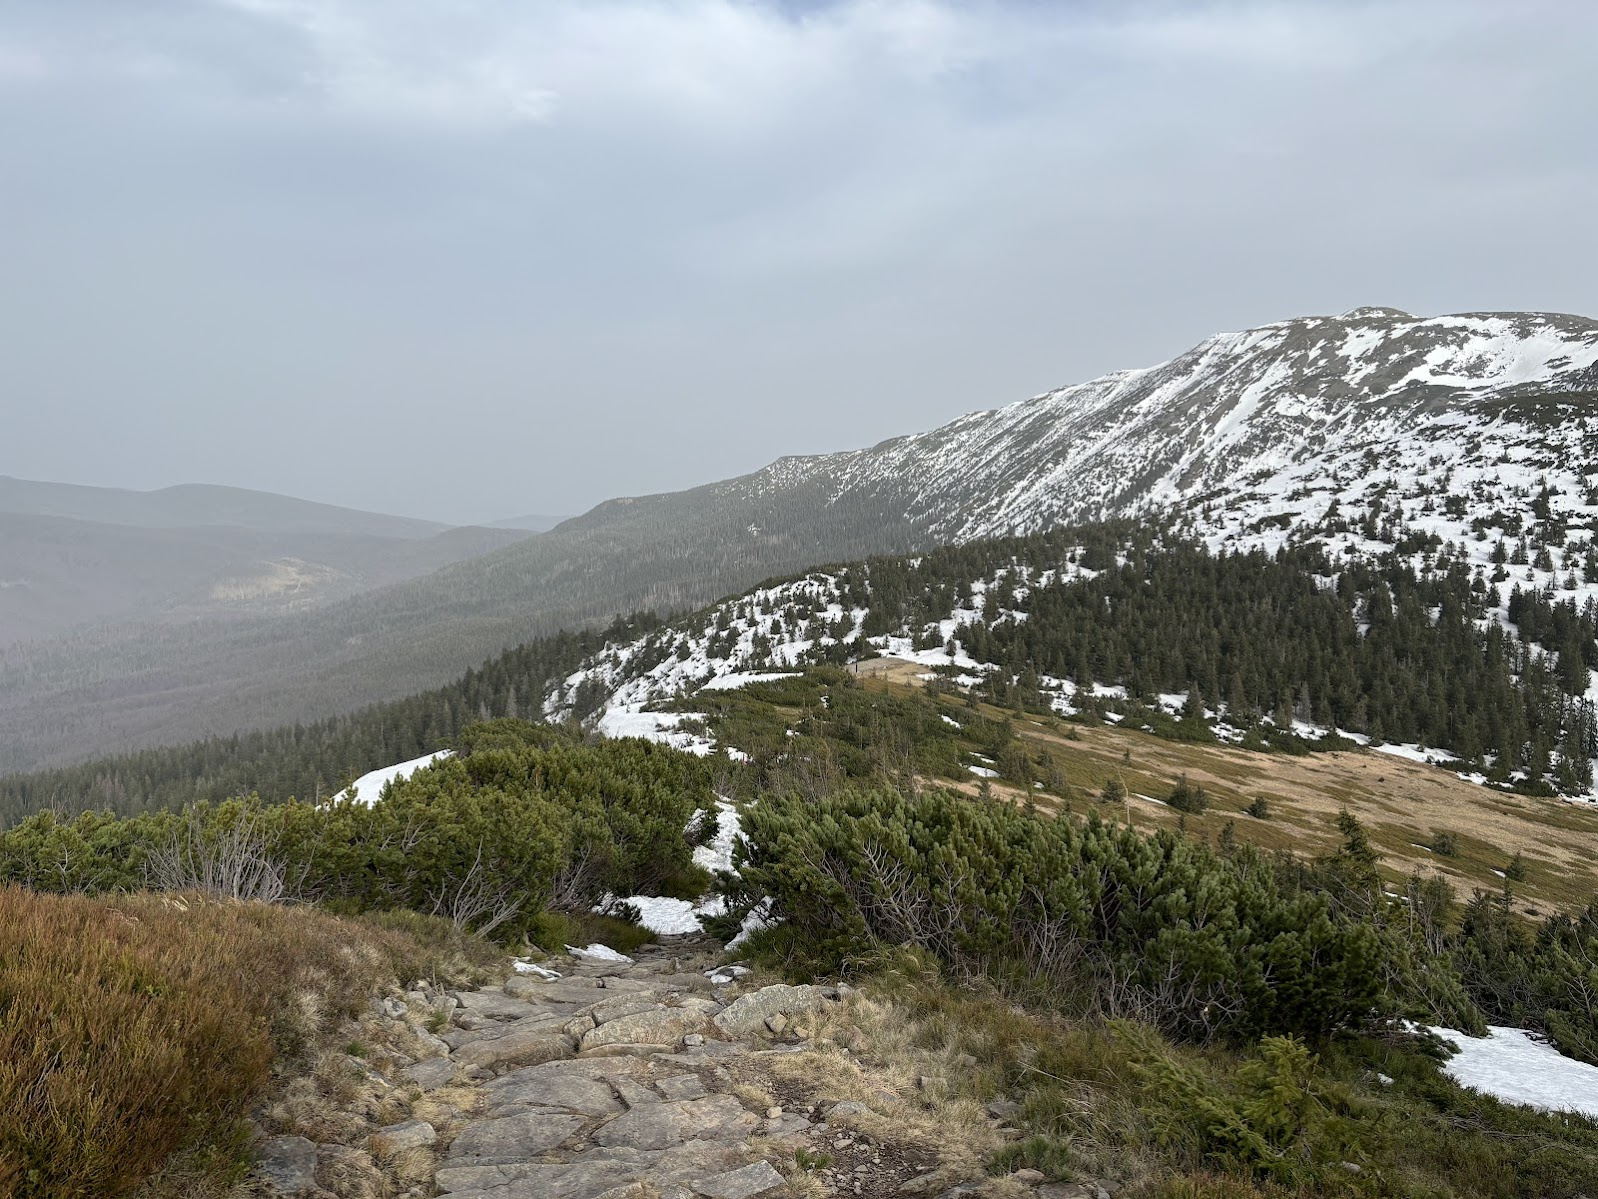 Zejście z Małej Babiej Góry. Po prawej - Babia Góra, a w dole, w samym centrum zdjęcia - przełęcz Brona.